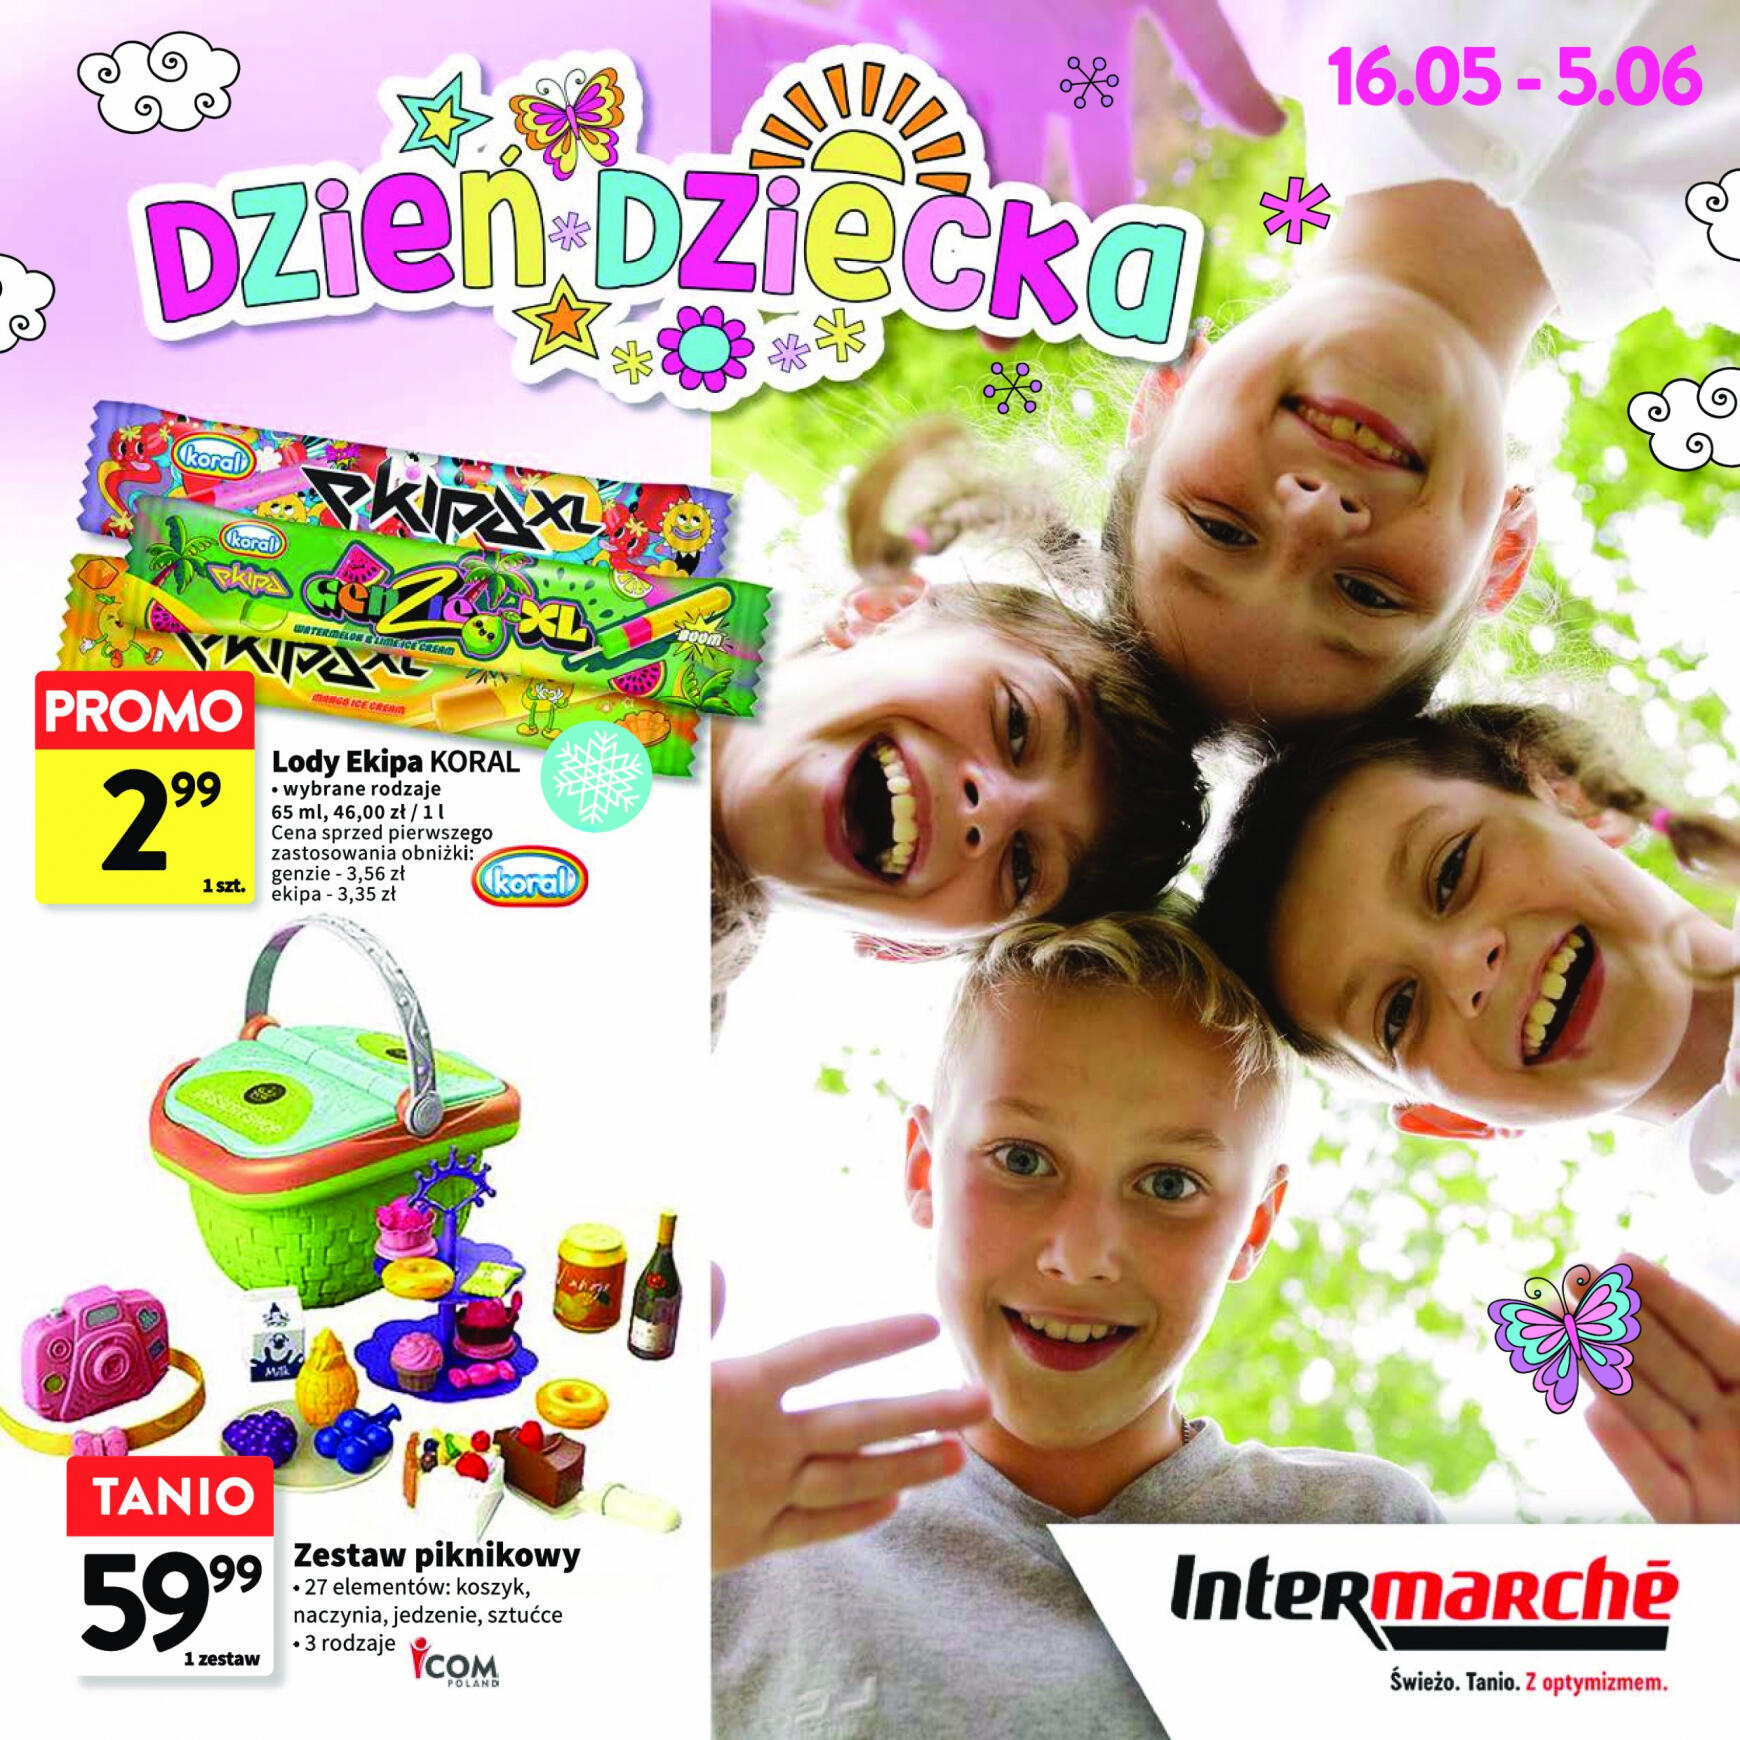 intermarche - Intermarché - Katalog Dzień dziecka gazetka aktualna ważna od 16.05. - 05.06.